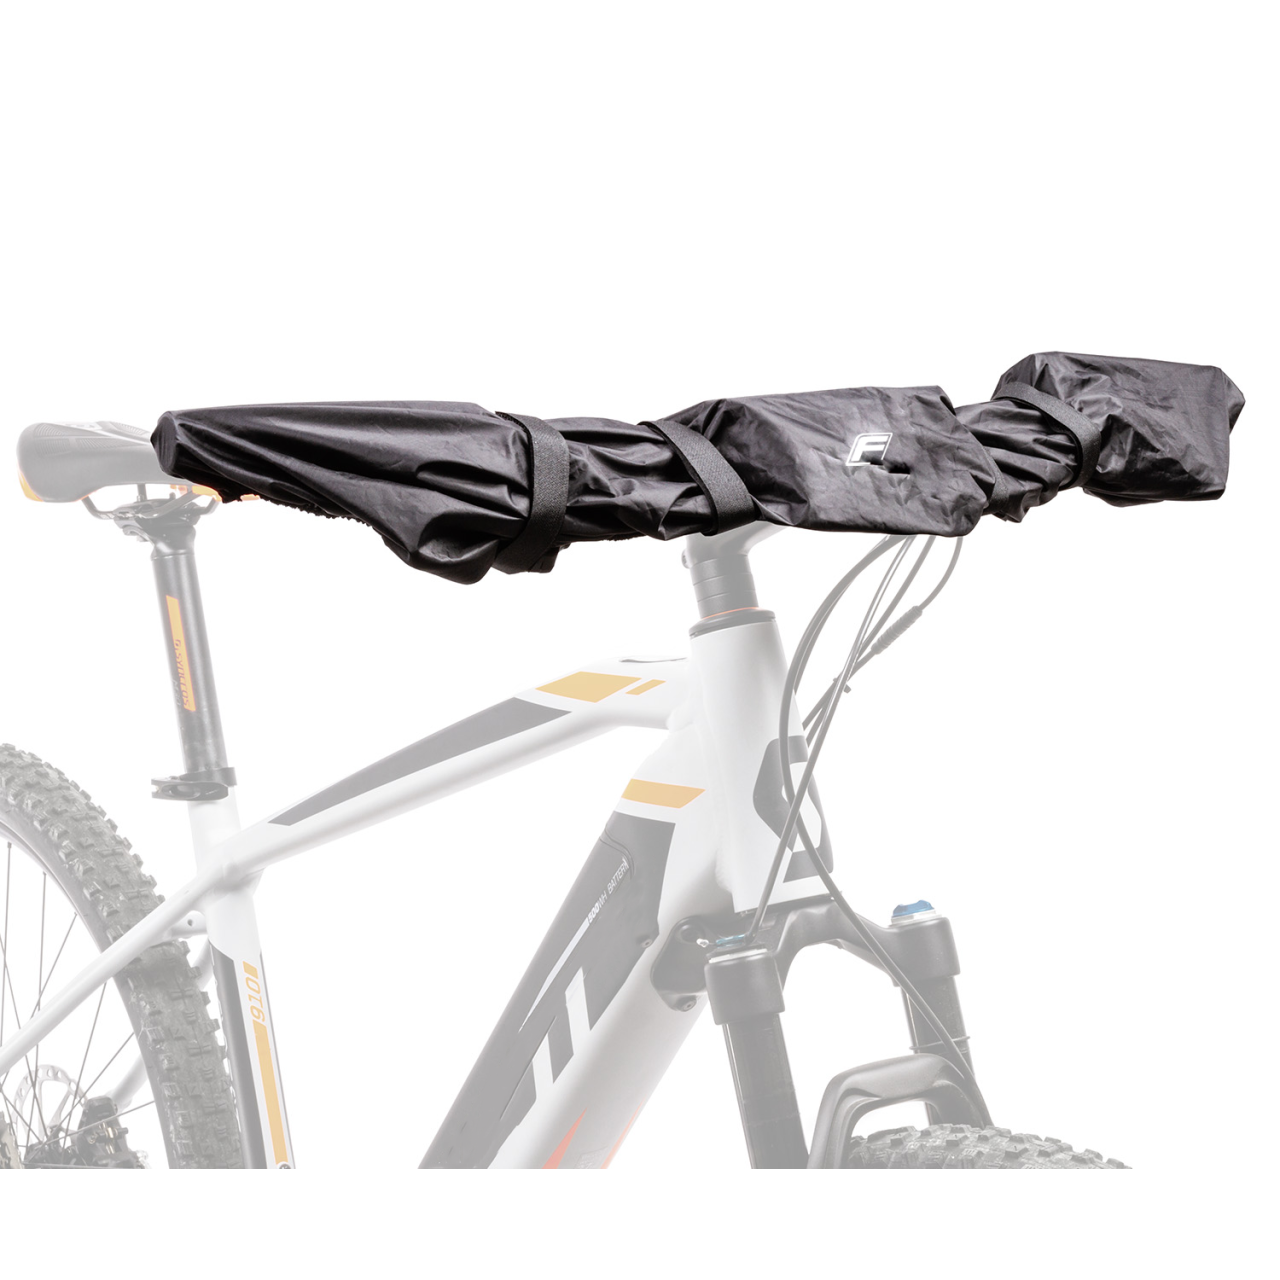 Housse de protection pour écran et guidon pour vélo sur